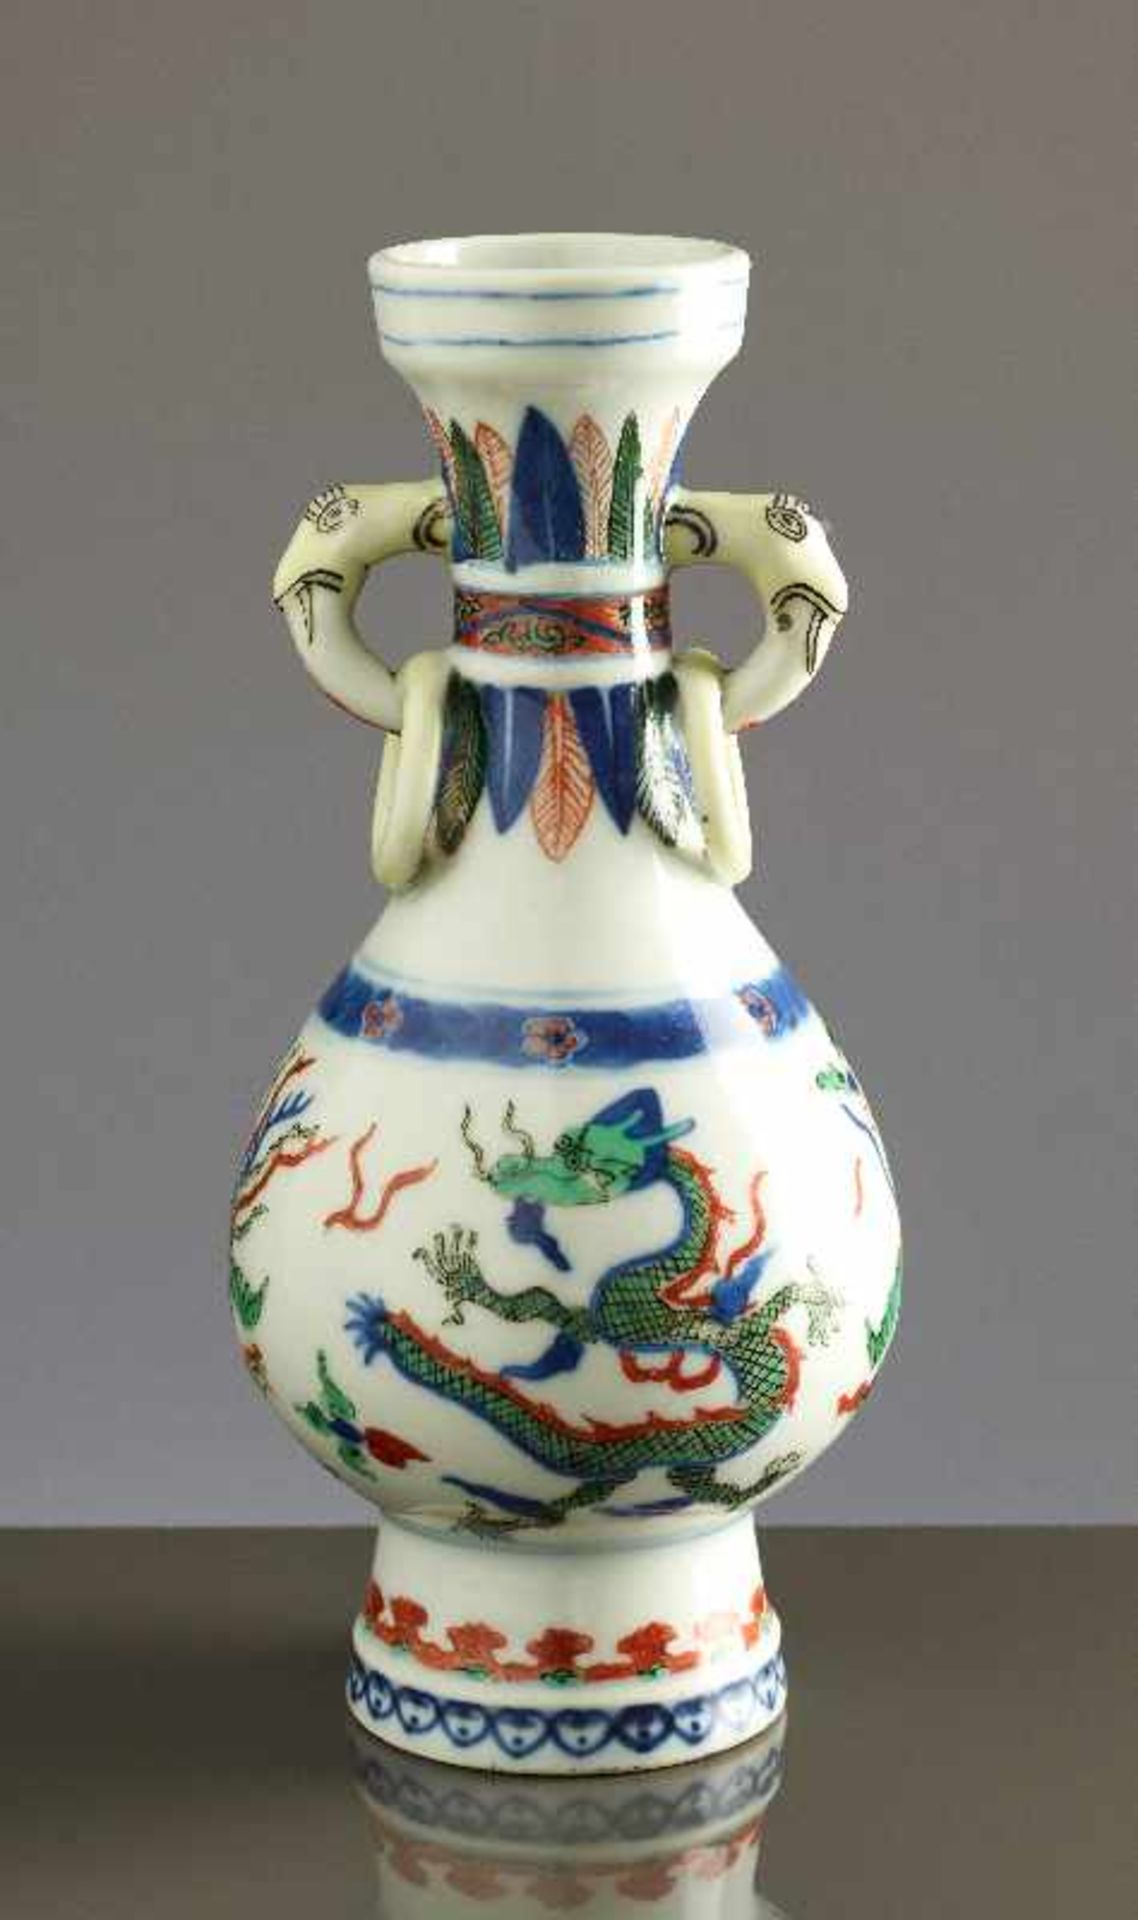 KLEINE VASE MIT DRACHEN UND PHÖNIX Wucai-Porzellan. China, Qing-Dynastie 19. Jh. bis Republik - Image 2 of 6